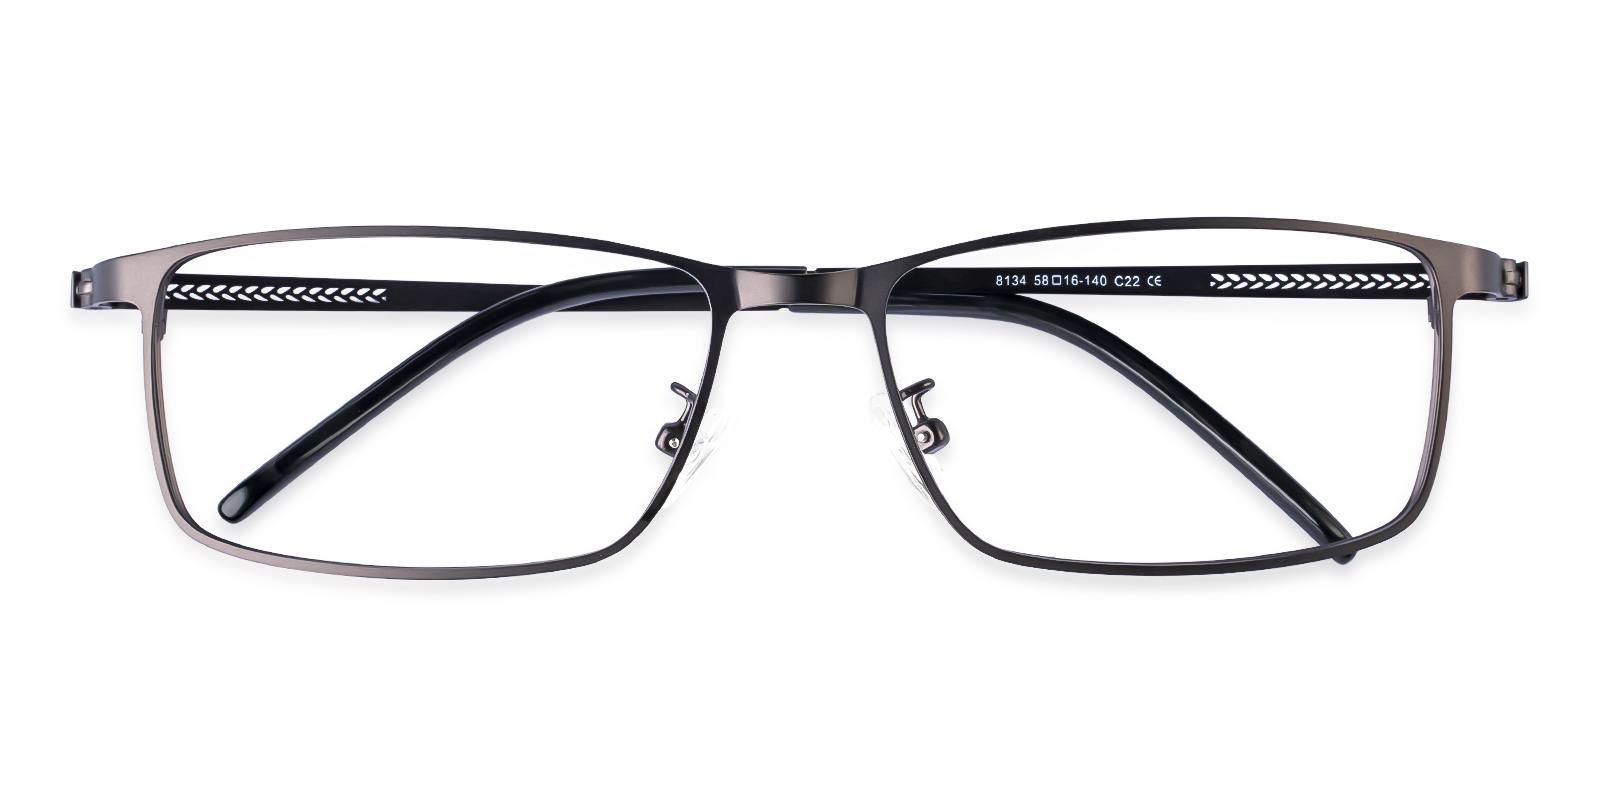 Daniel Gun Metal Eyeglasses , NosePads Frames from ABBE Glasses